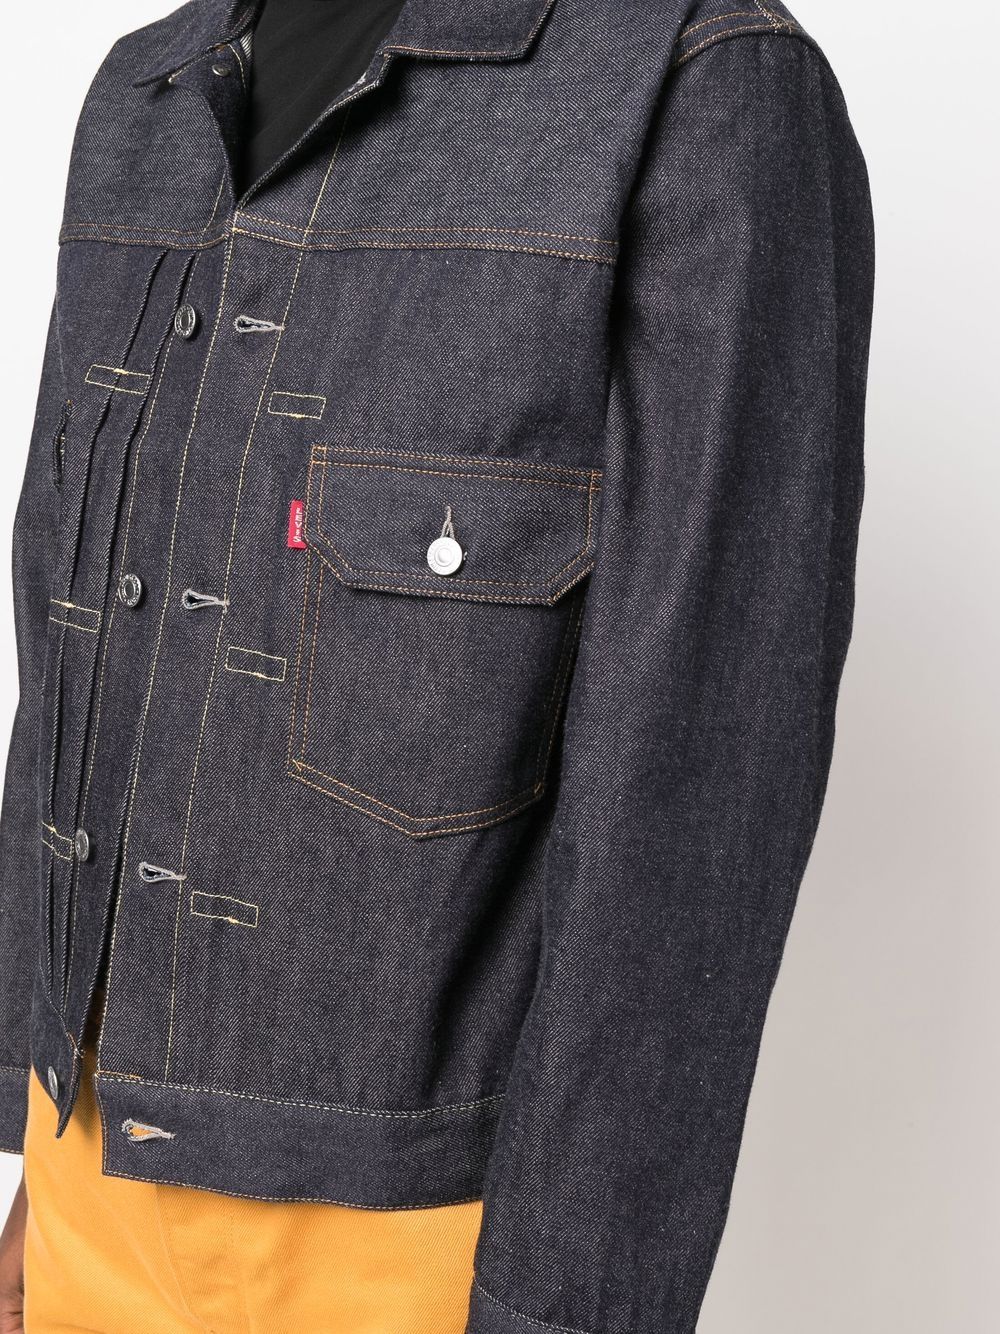 Levi's 1953 Type Ii Denim Jacket - Farfetch